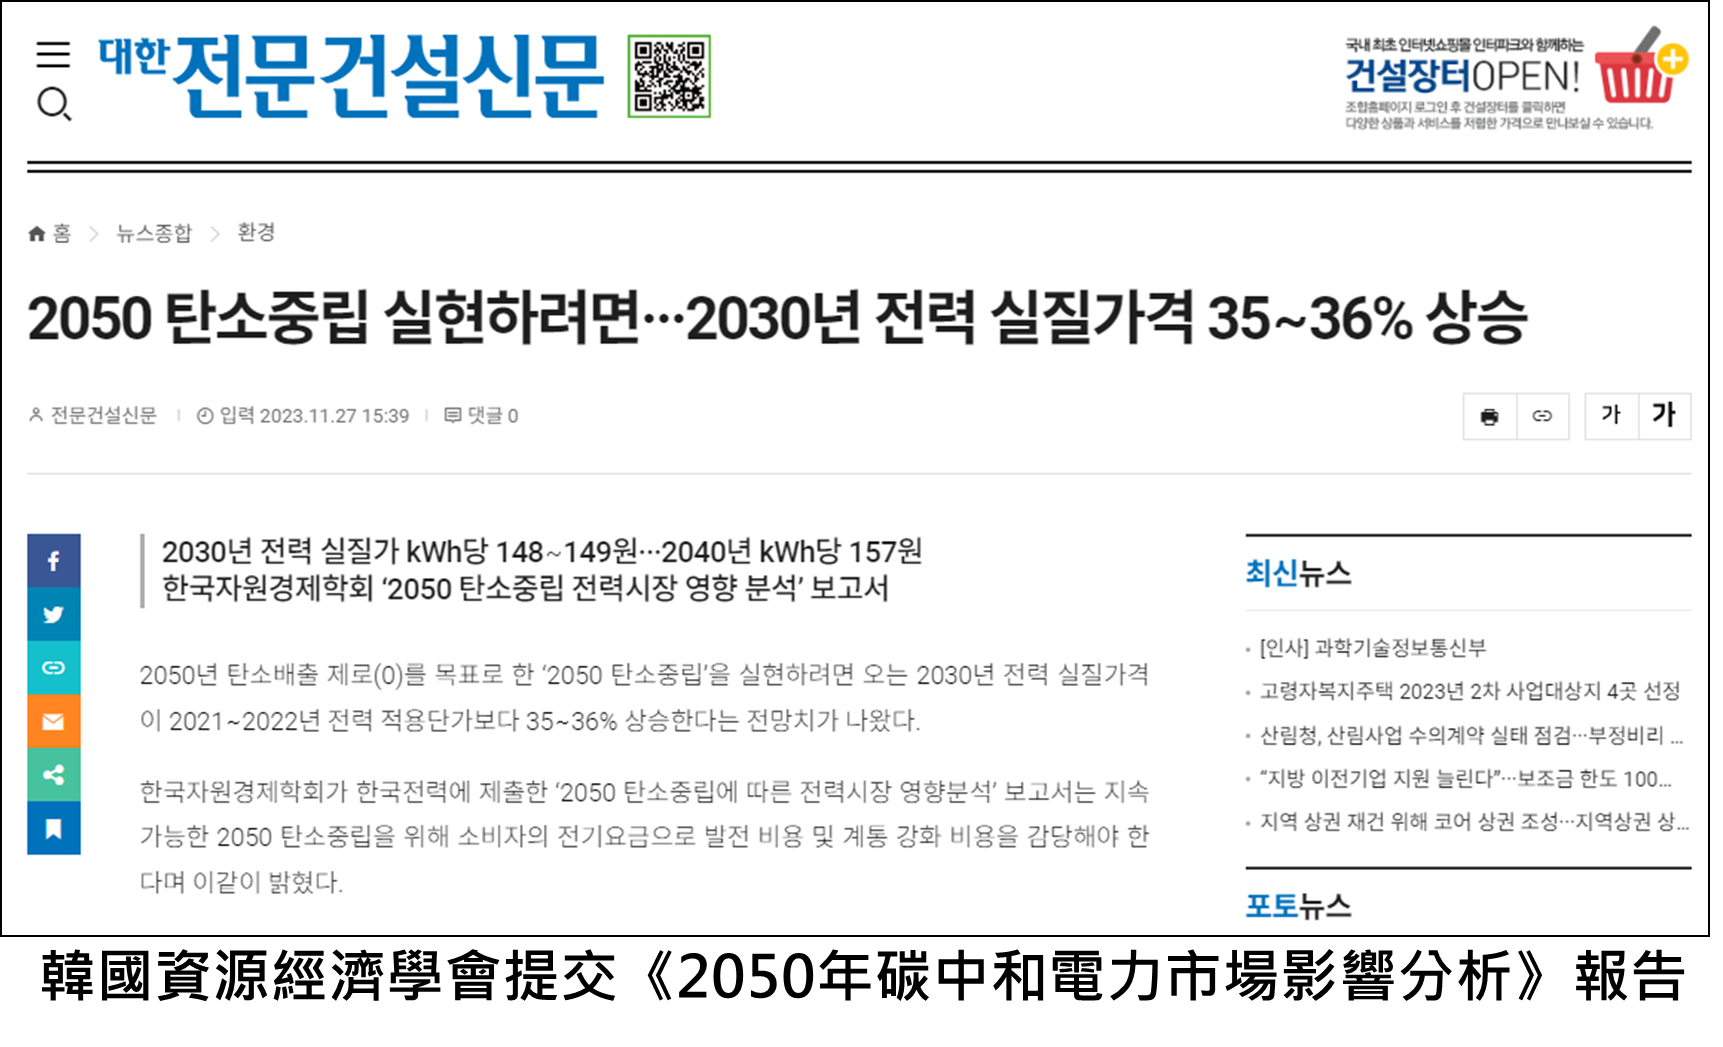 韓國資源經濟學會提交《2050年碳中和電力市場影響分析》報告